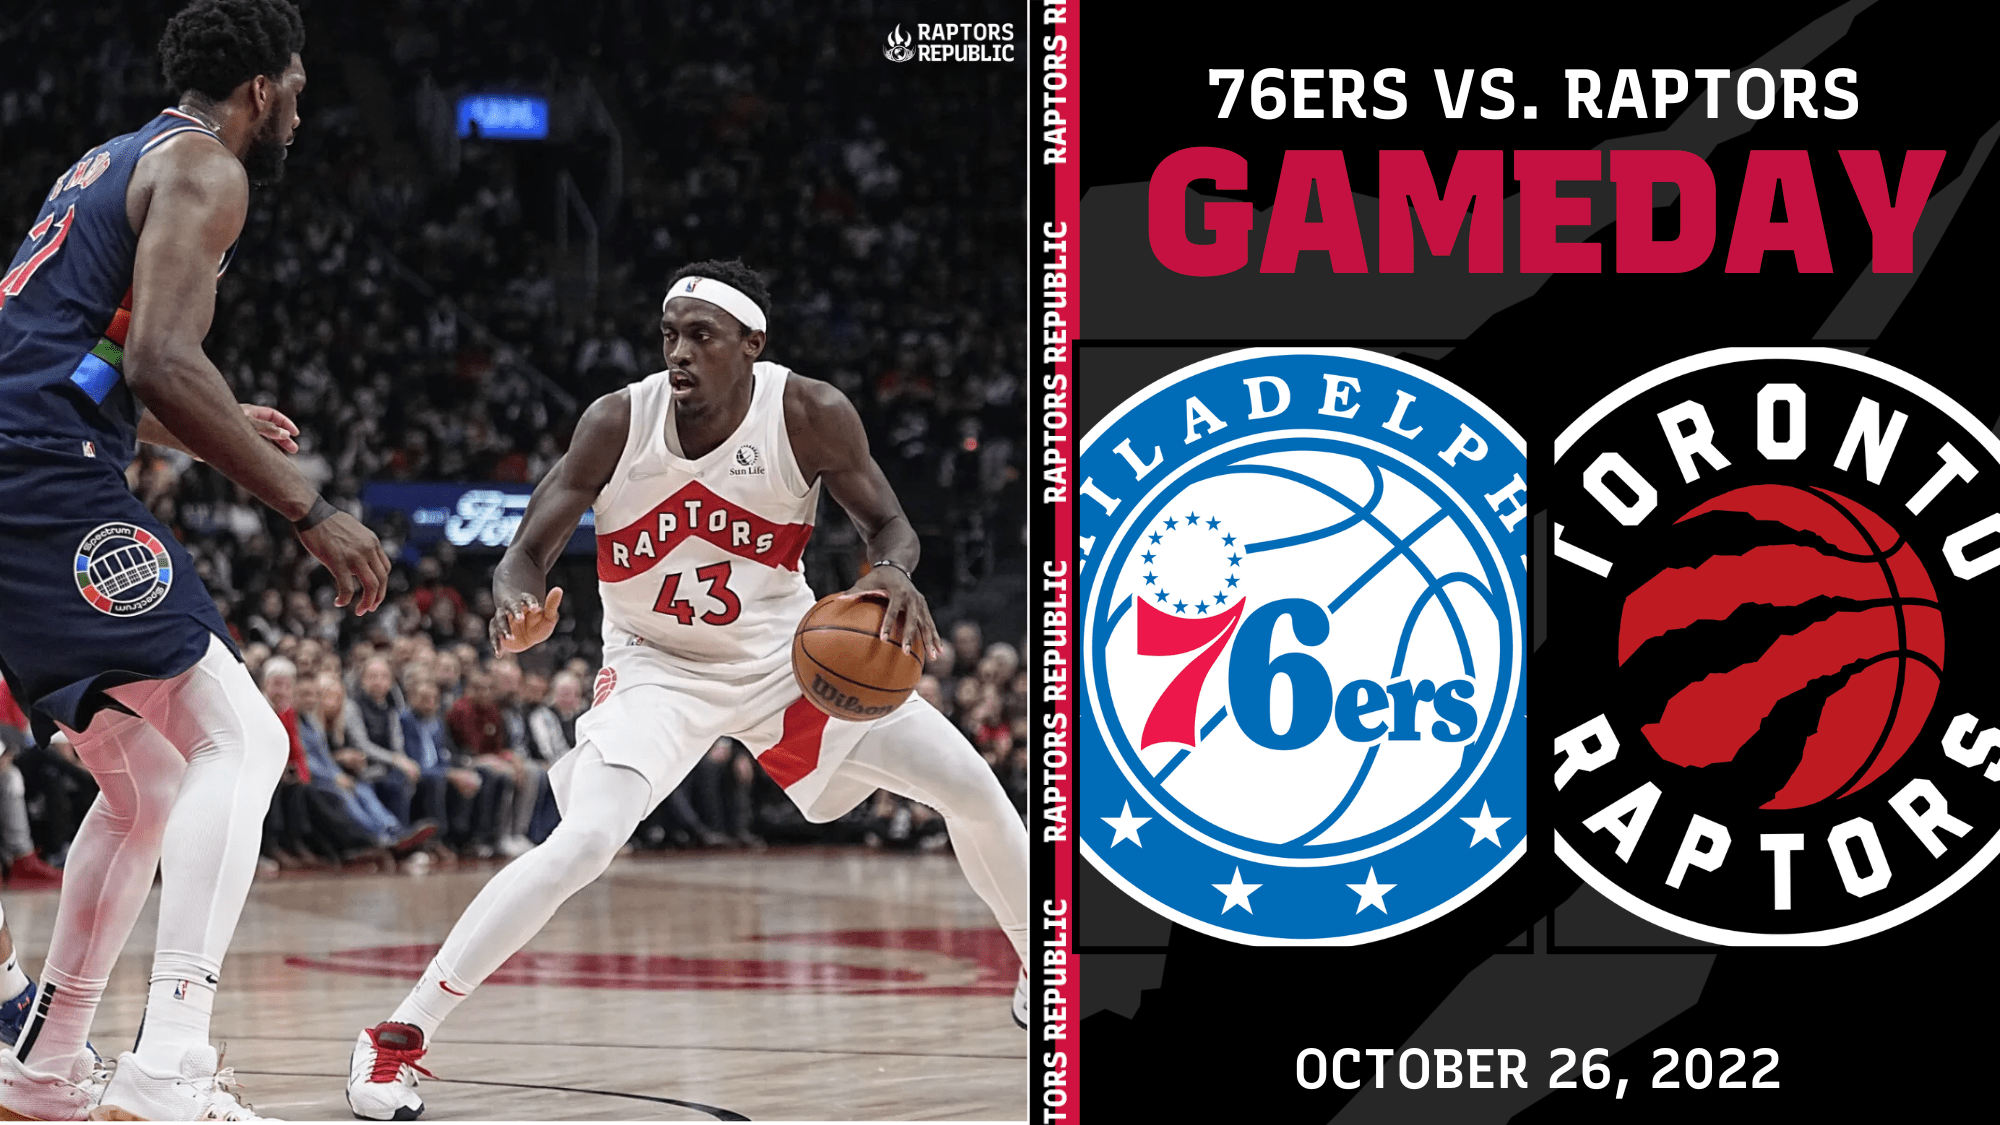 Gameday: 76ers vs Raptors, October 26